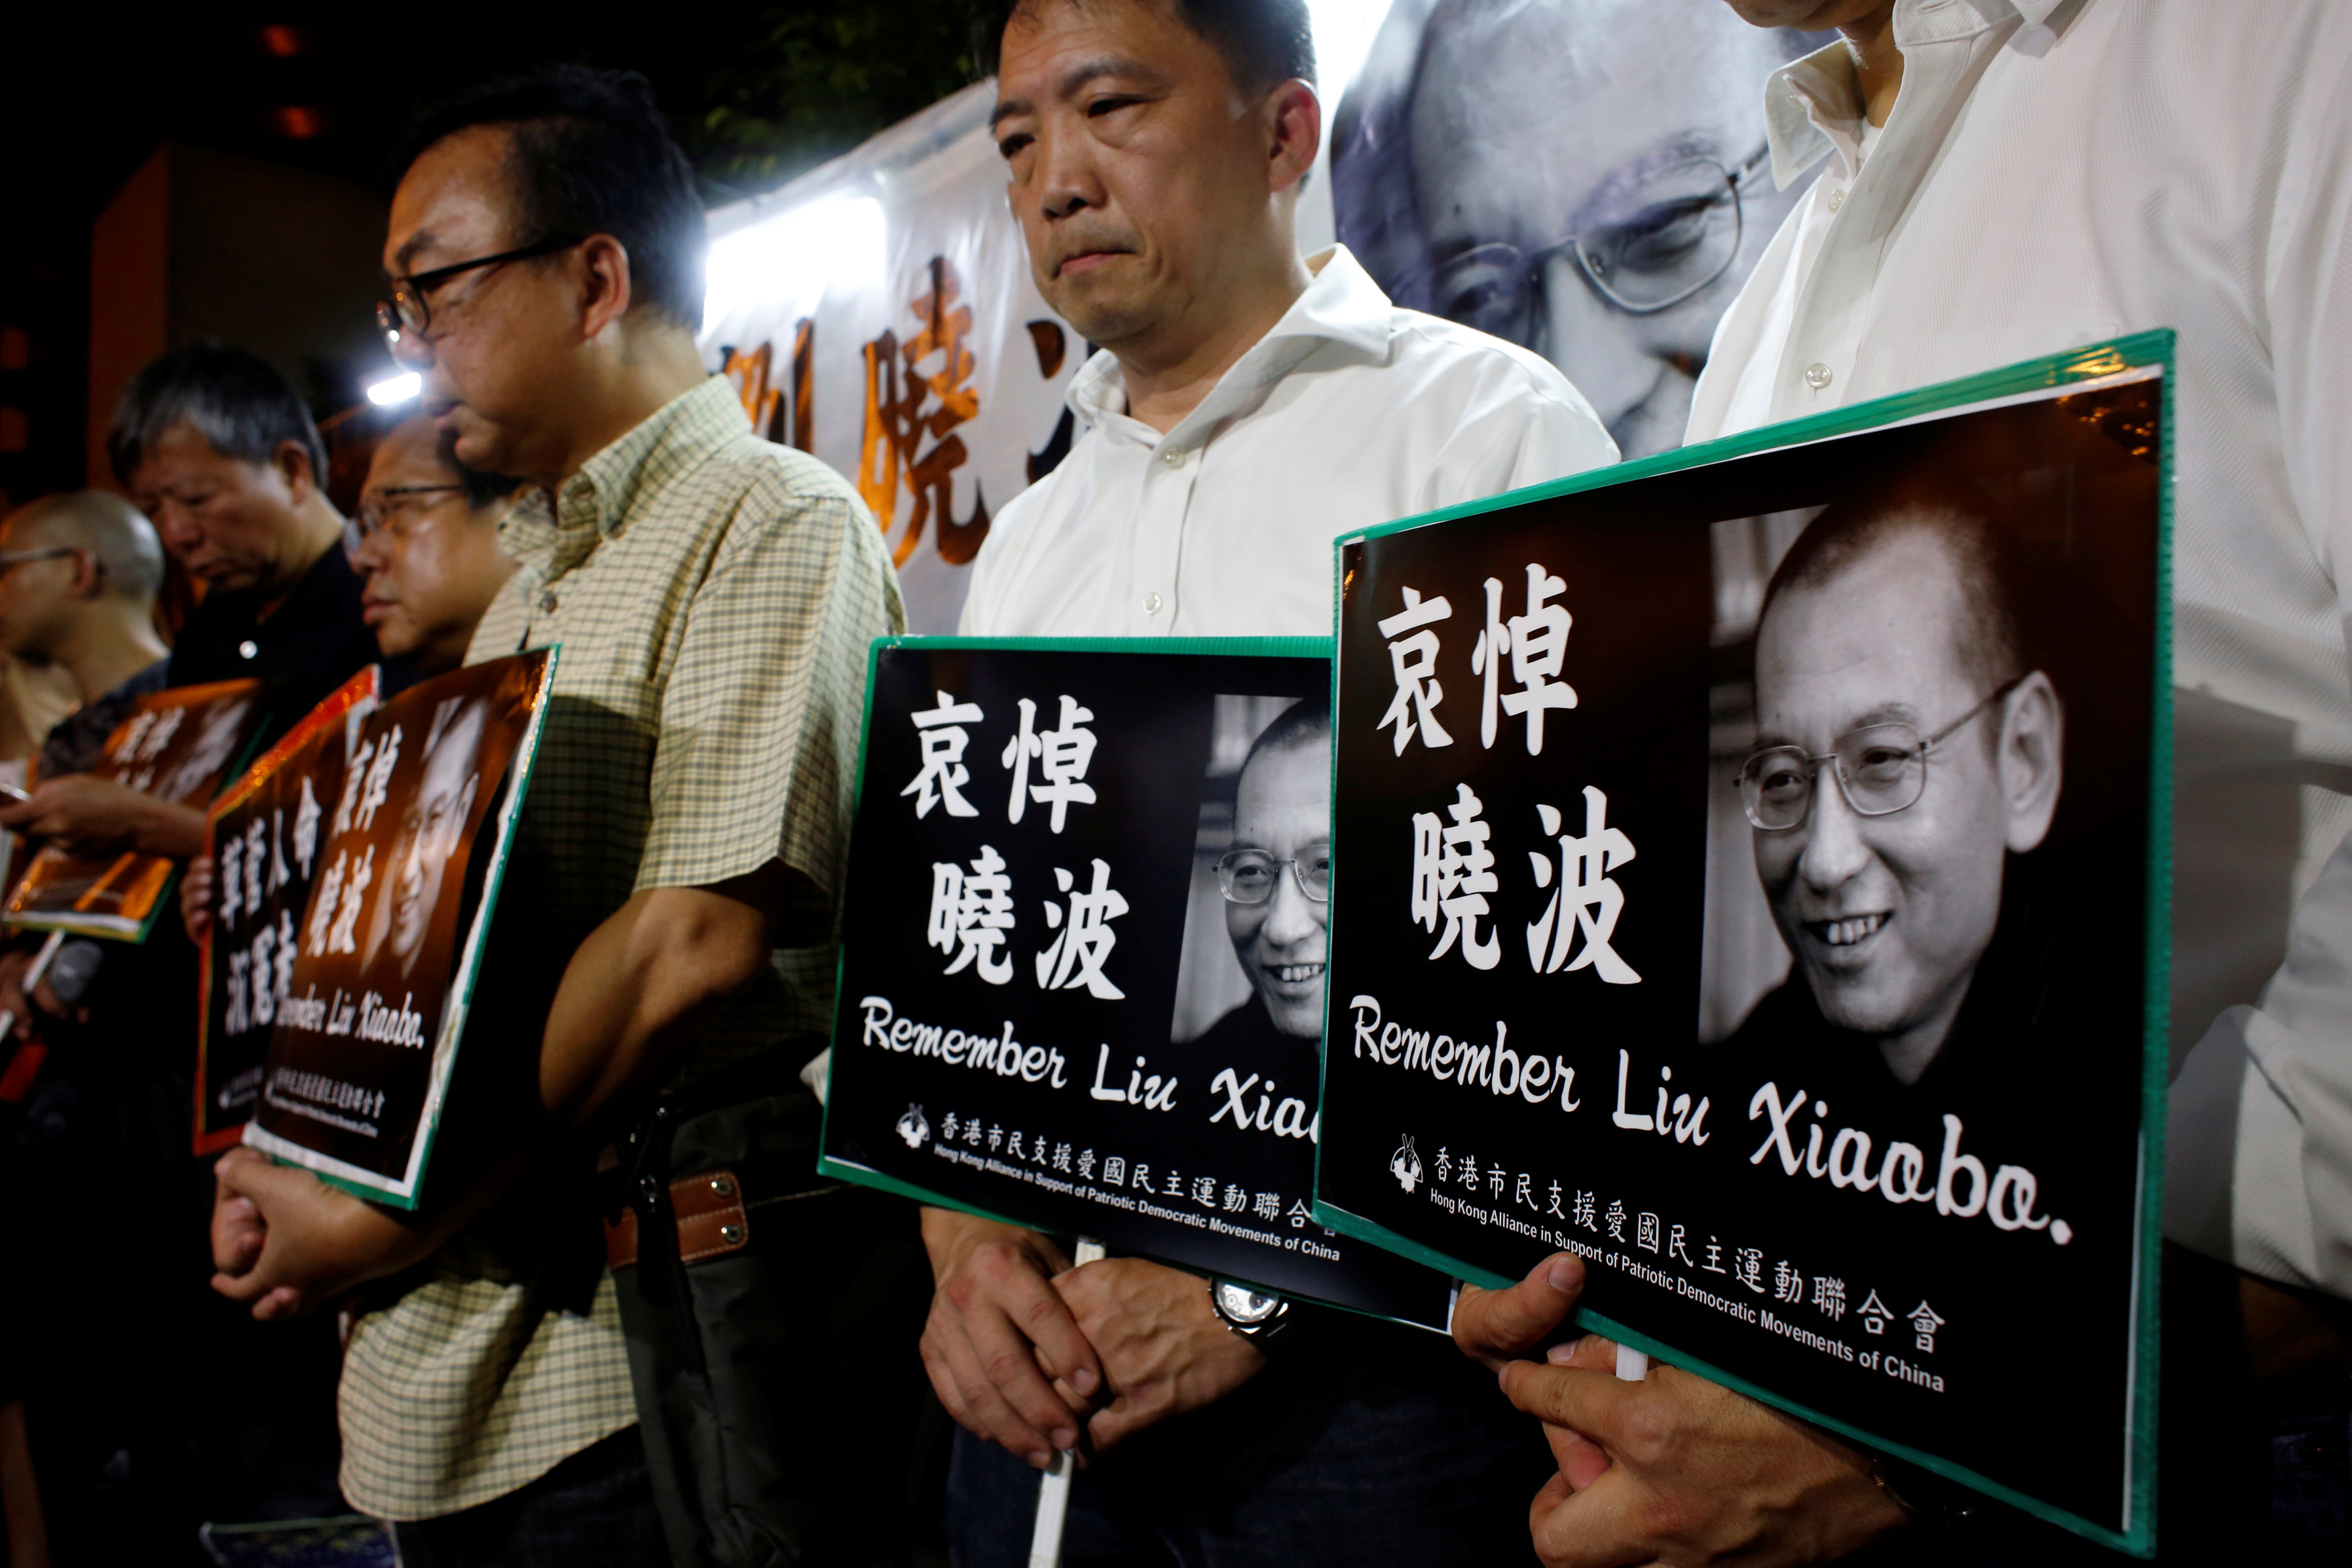 نشطاء يحملون حكومة الصين مسئولية وفاة المعارض ليو شياوباو